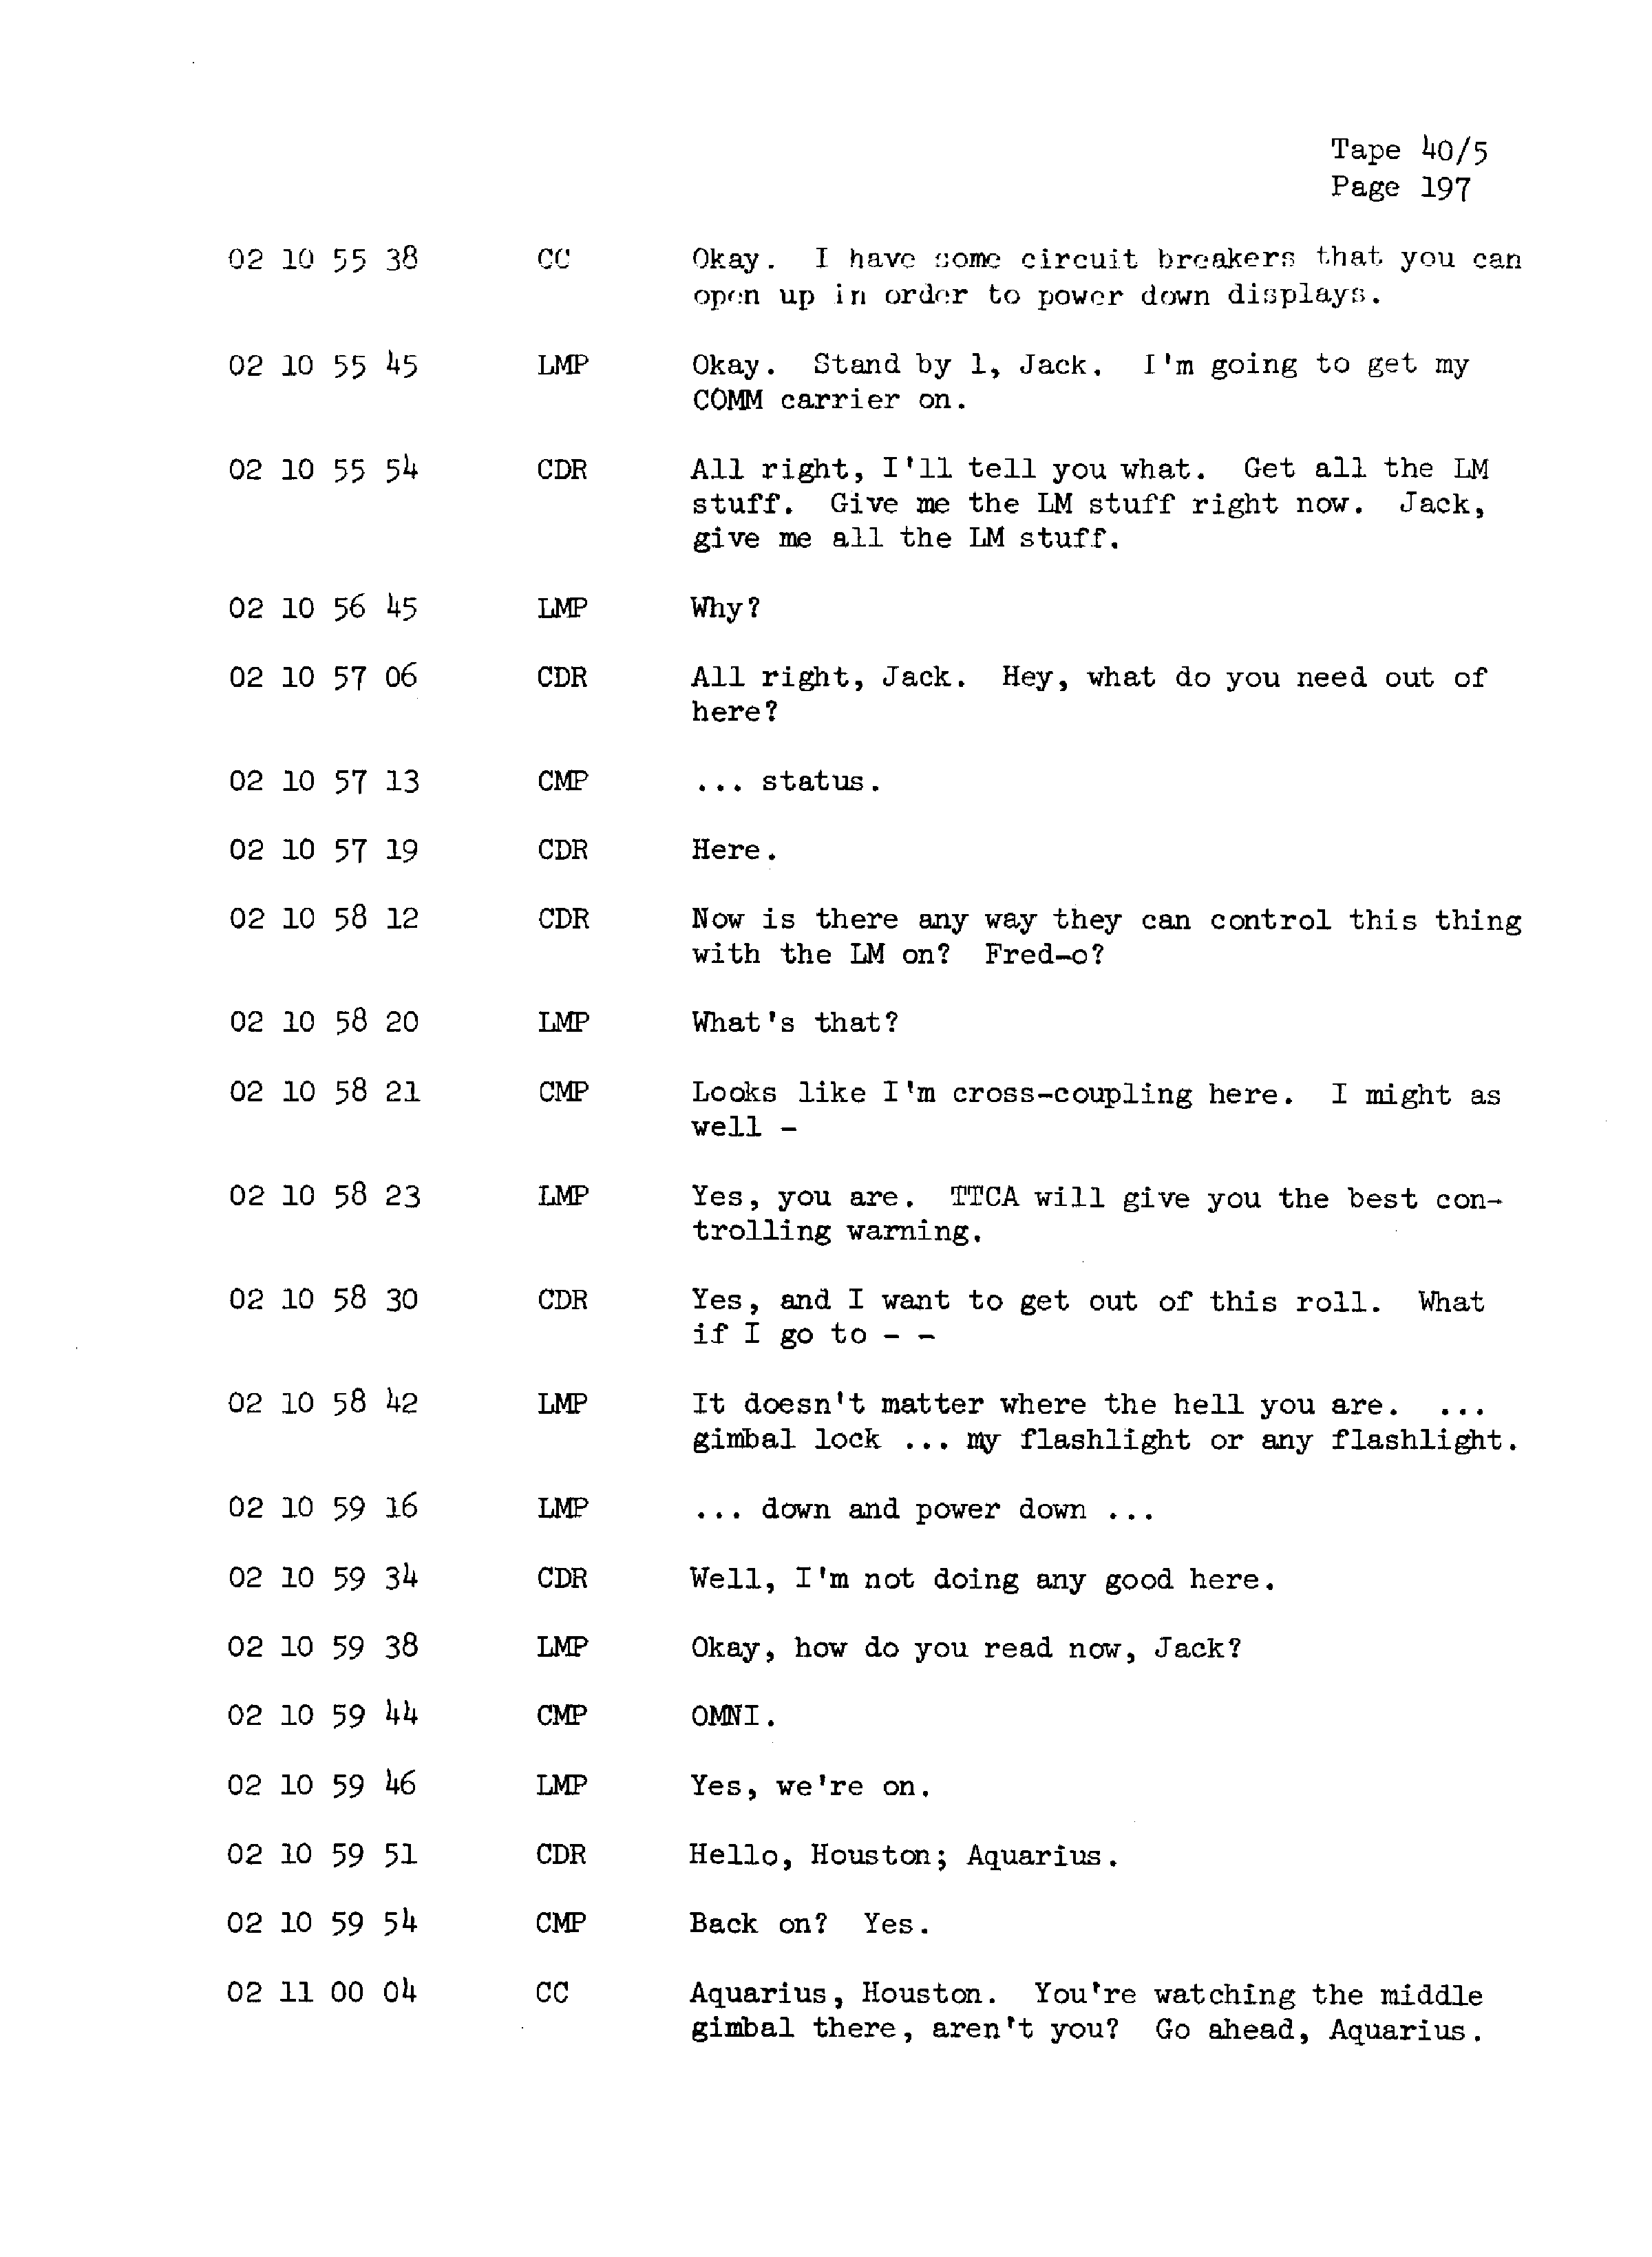 Page 204 of Apollo 13’s original transcript